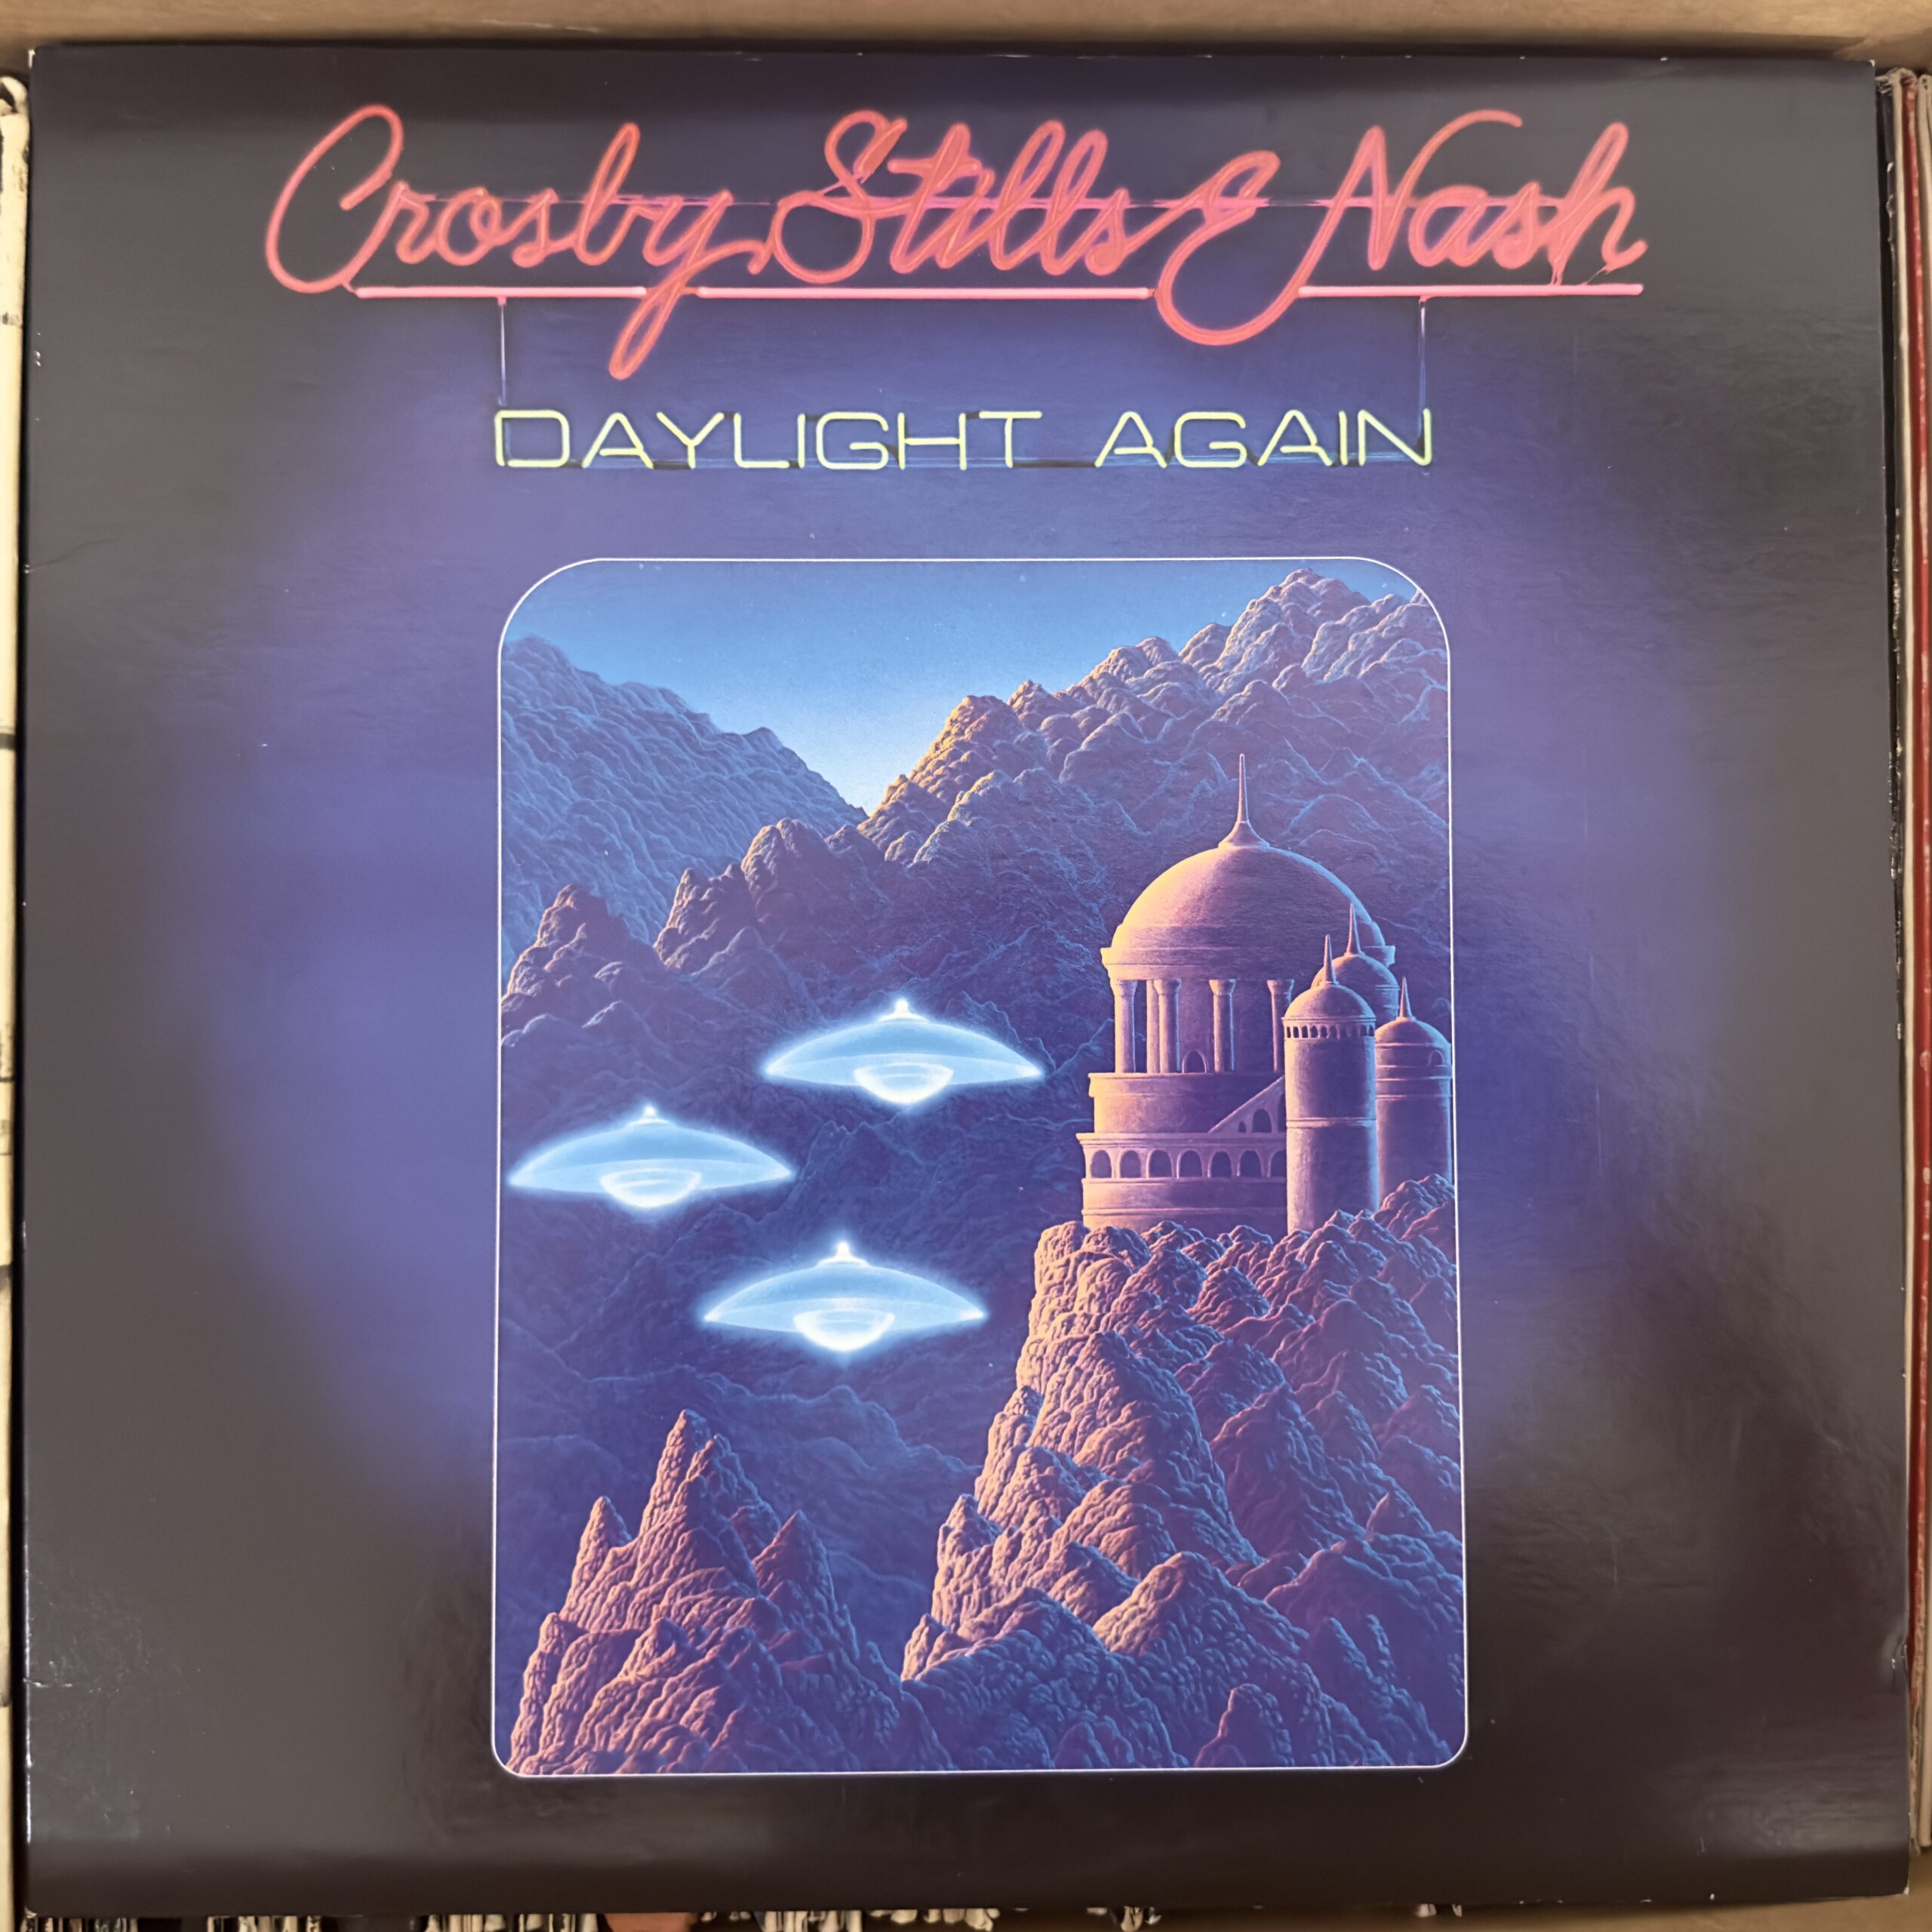 Daylight Again by Crosby, Stills & Nash